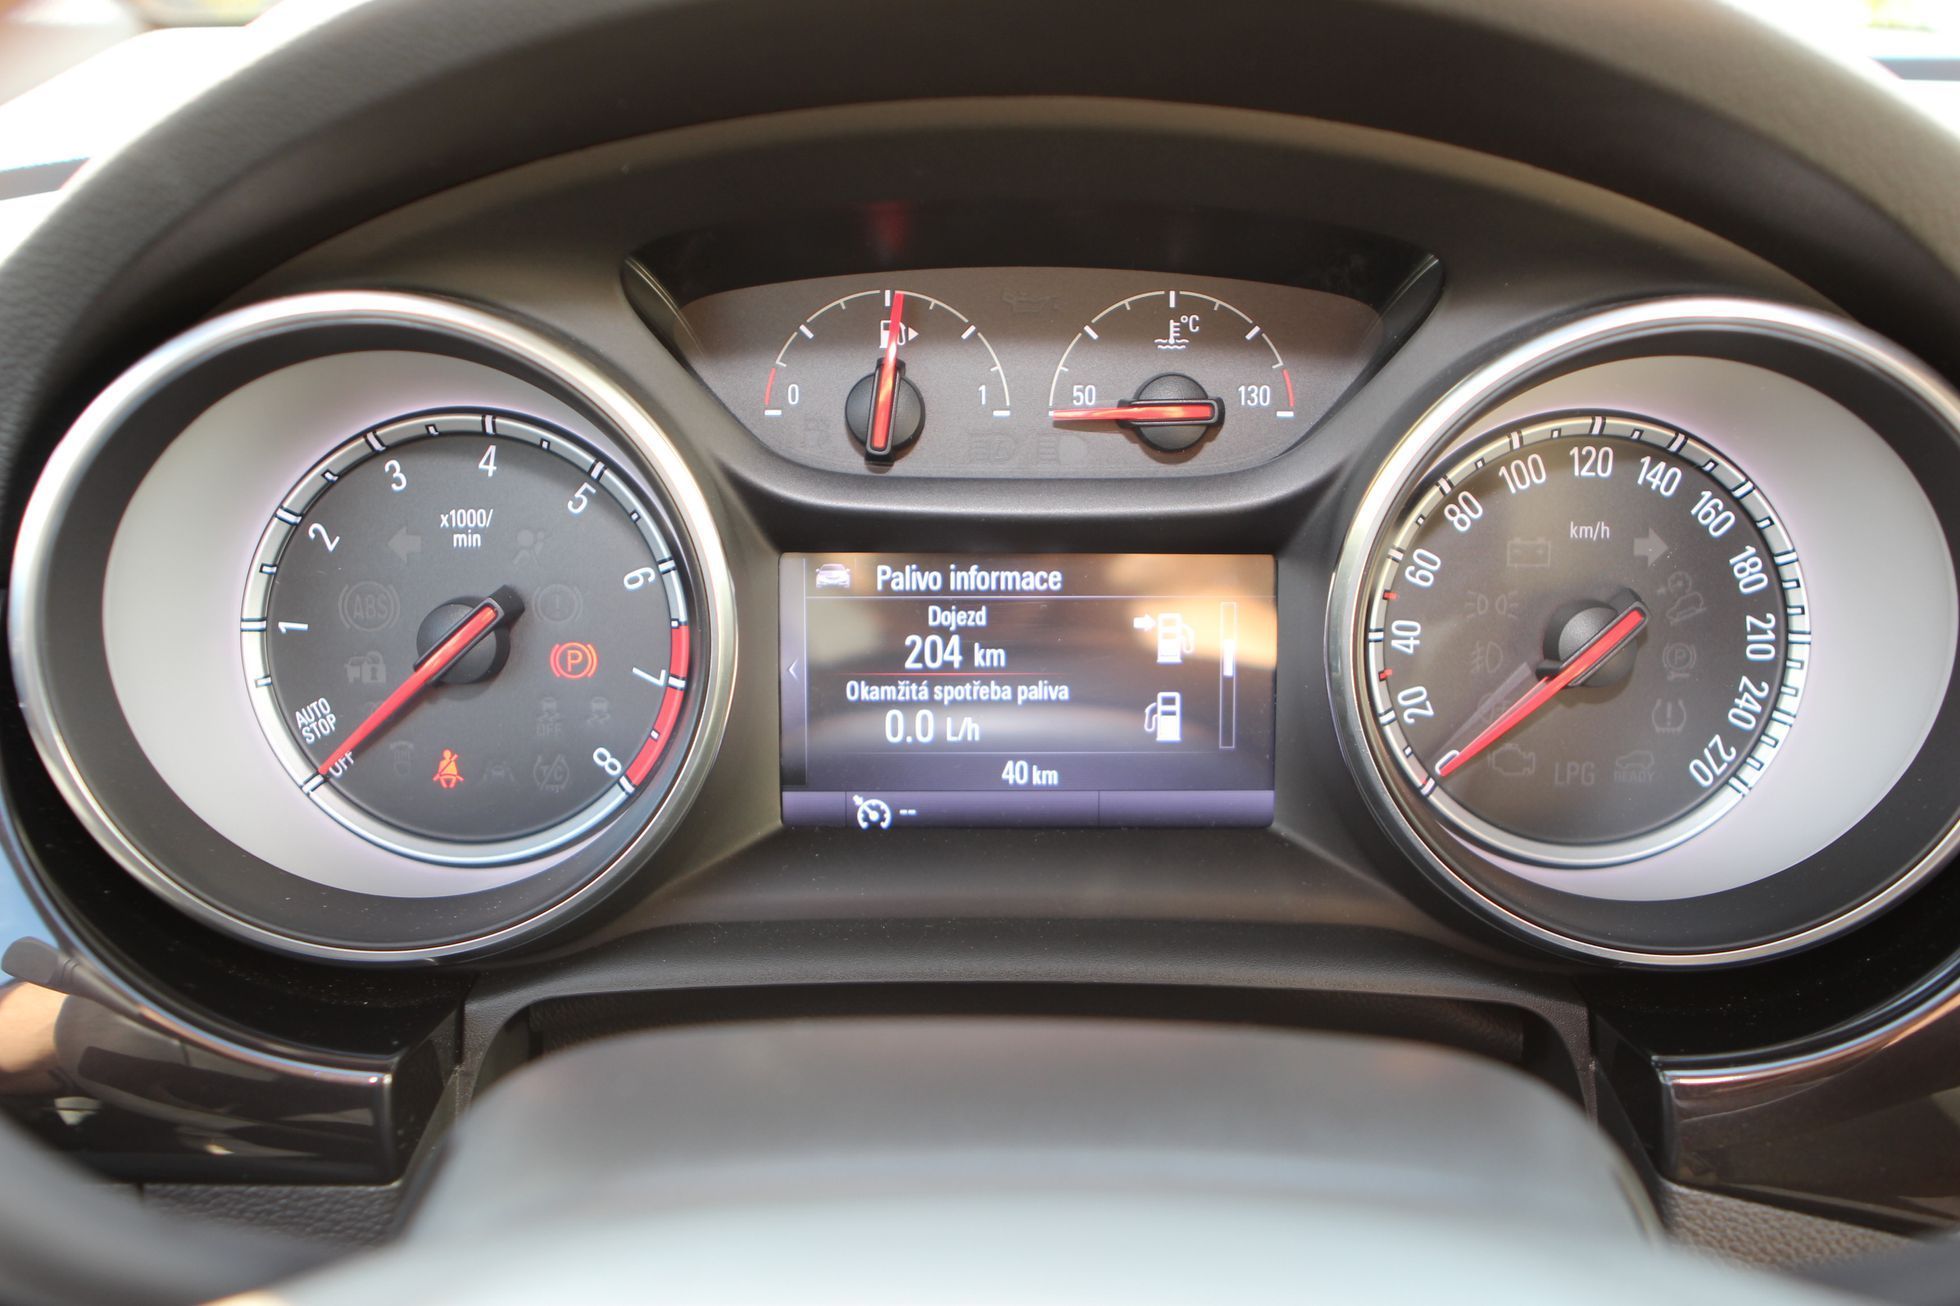 Opel Astra 2015 - ukazatele